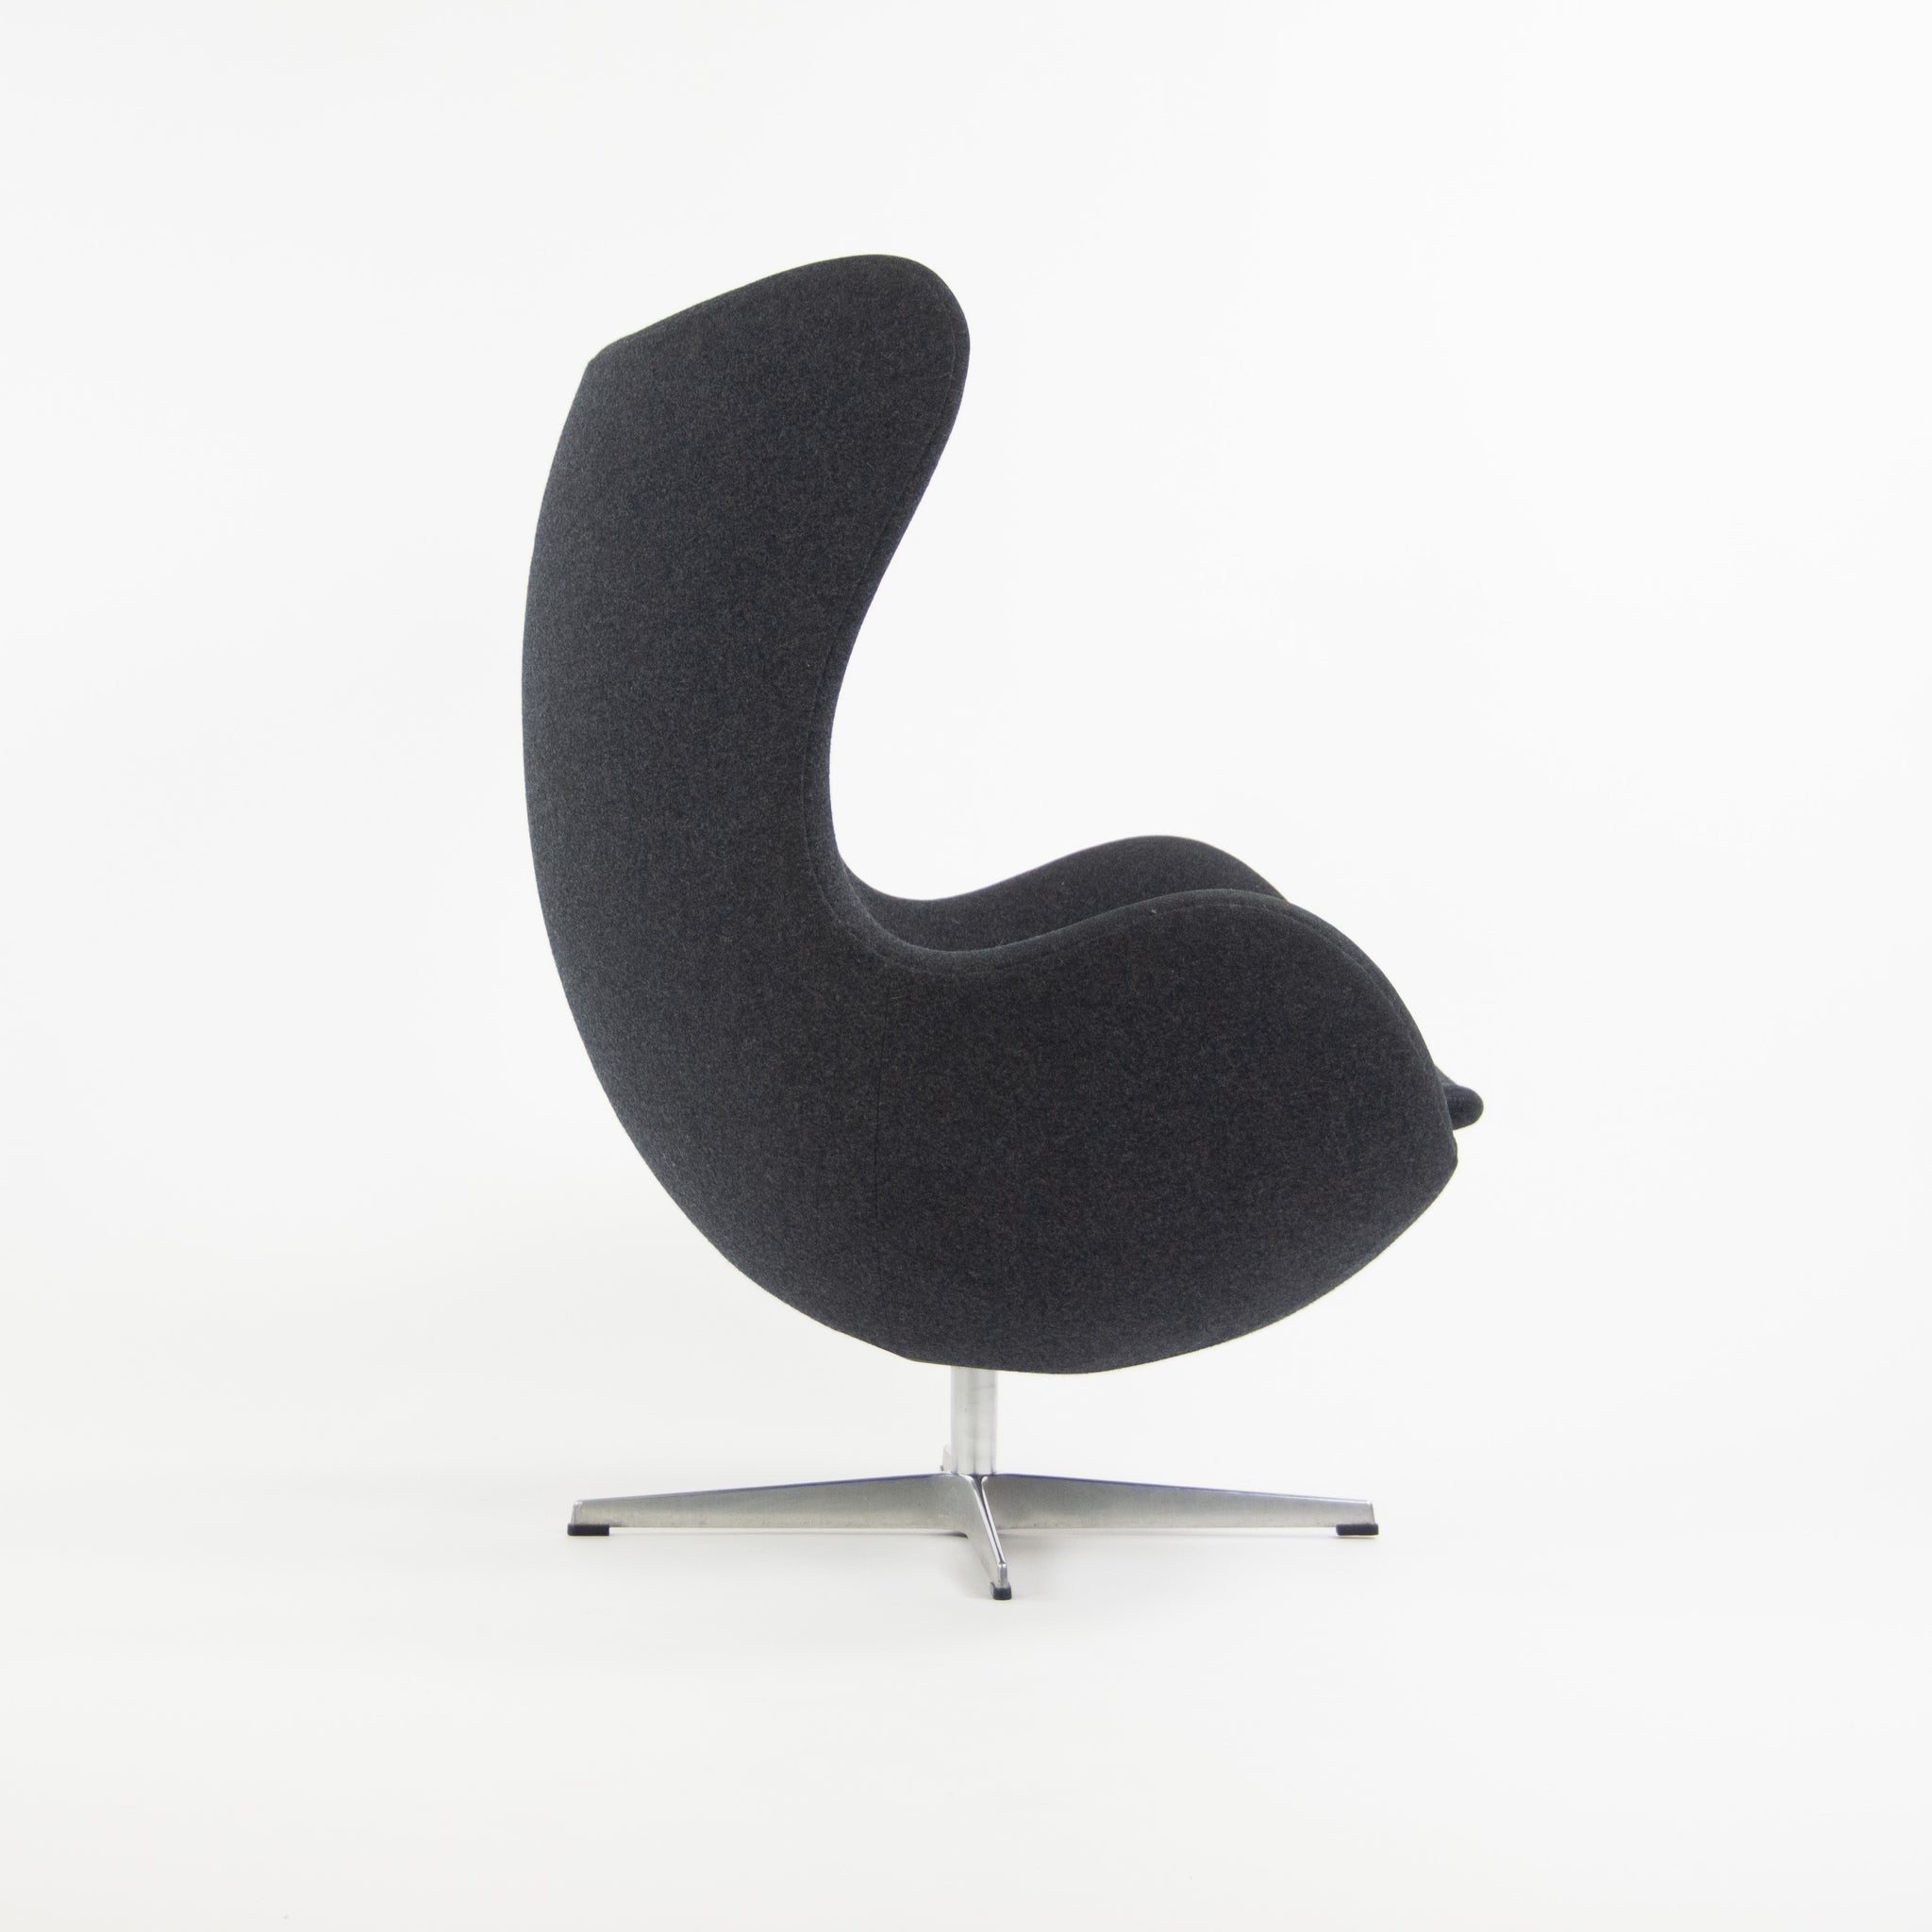 SOLD Egg Chair by Arne Jacobsen for Fritz Hansen Original Fabric Denmark Gray, 2013, 2 Available